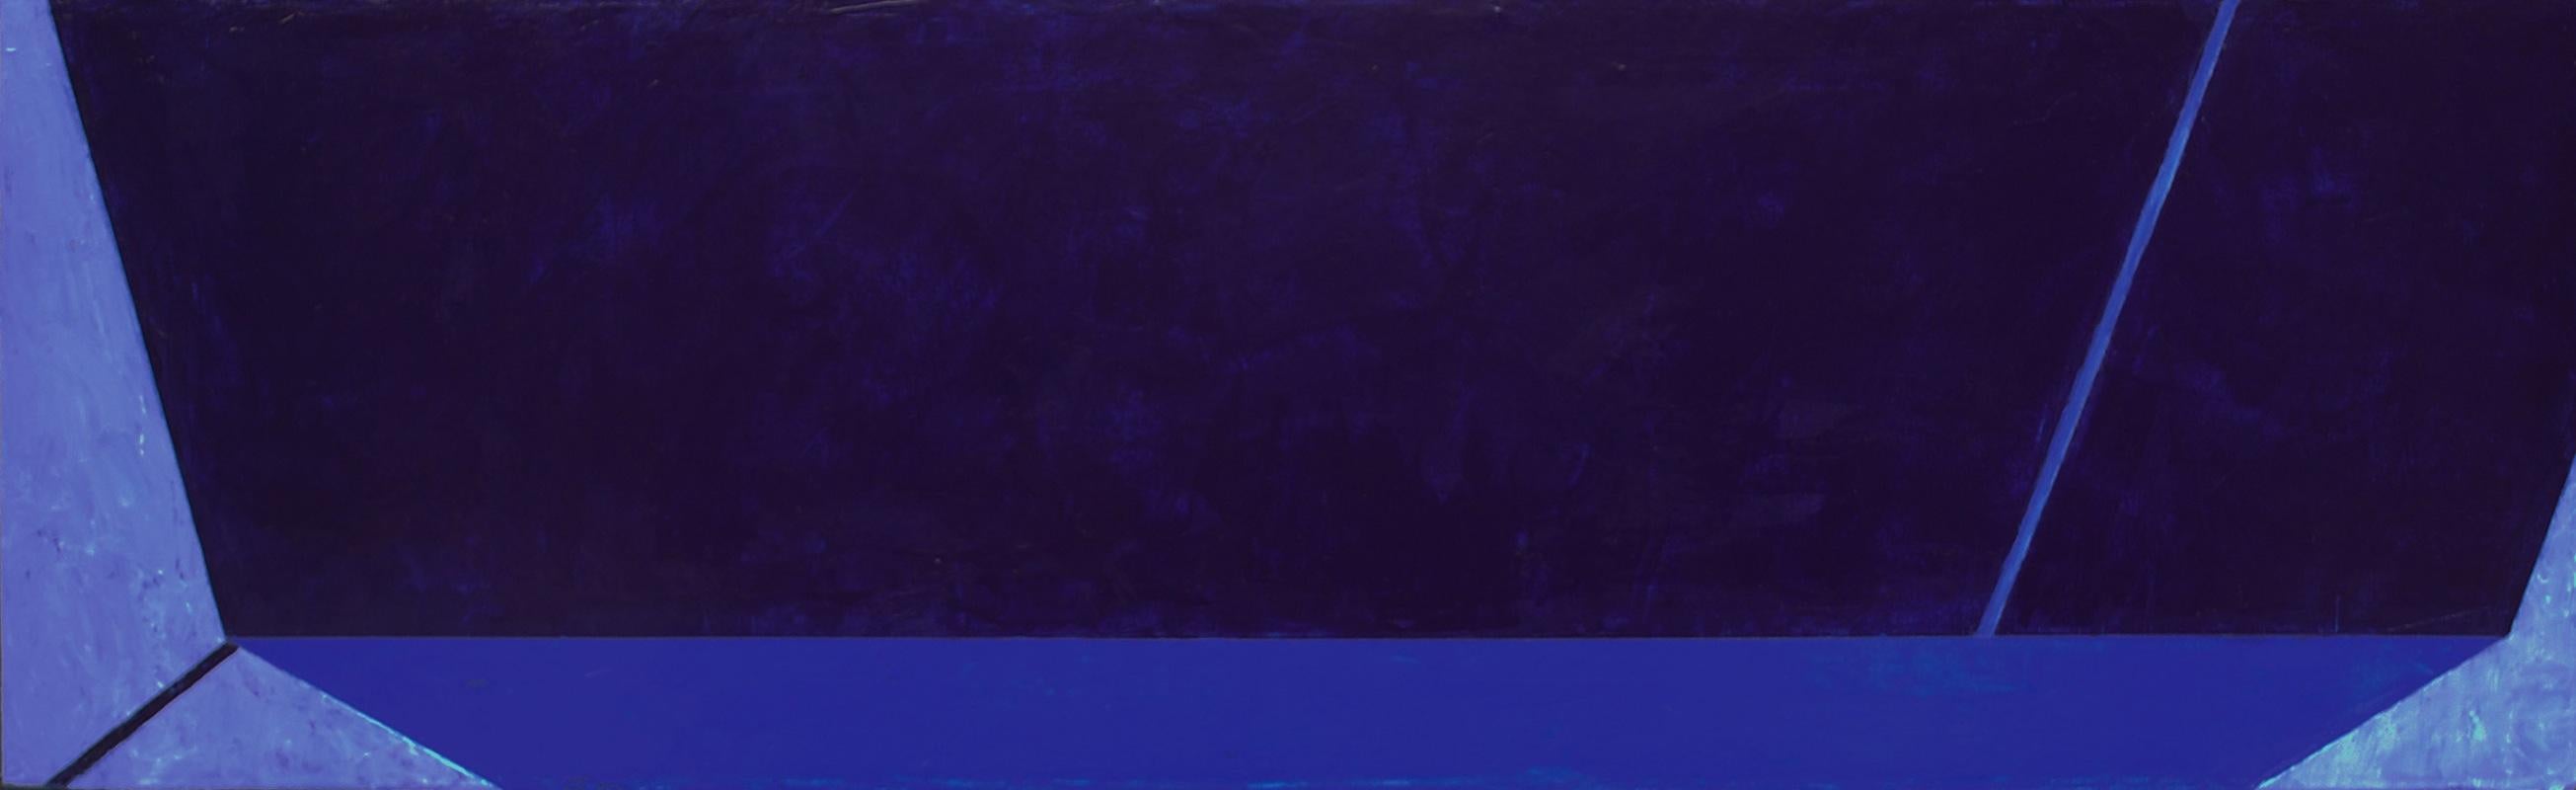 Macyn Bolt, Shift II, 2018, Minimalist, acrylic on canvas, 20 x 24 x 2 inches For Sale 6